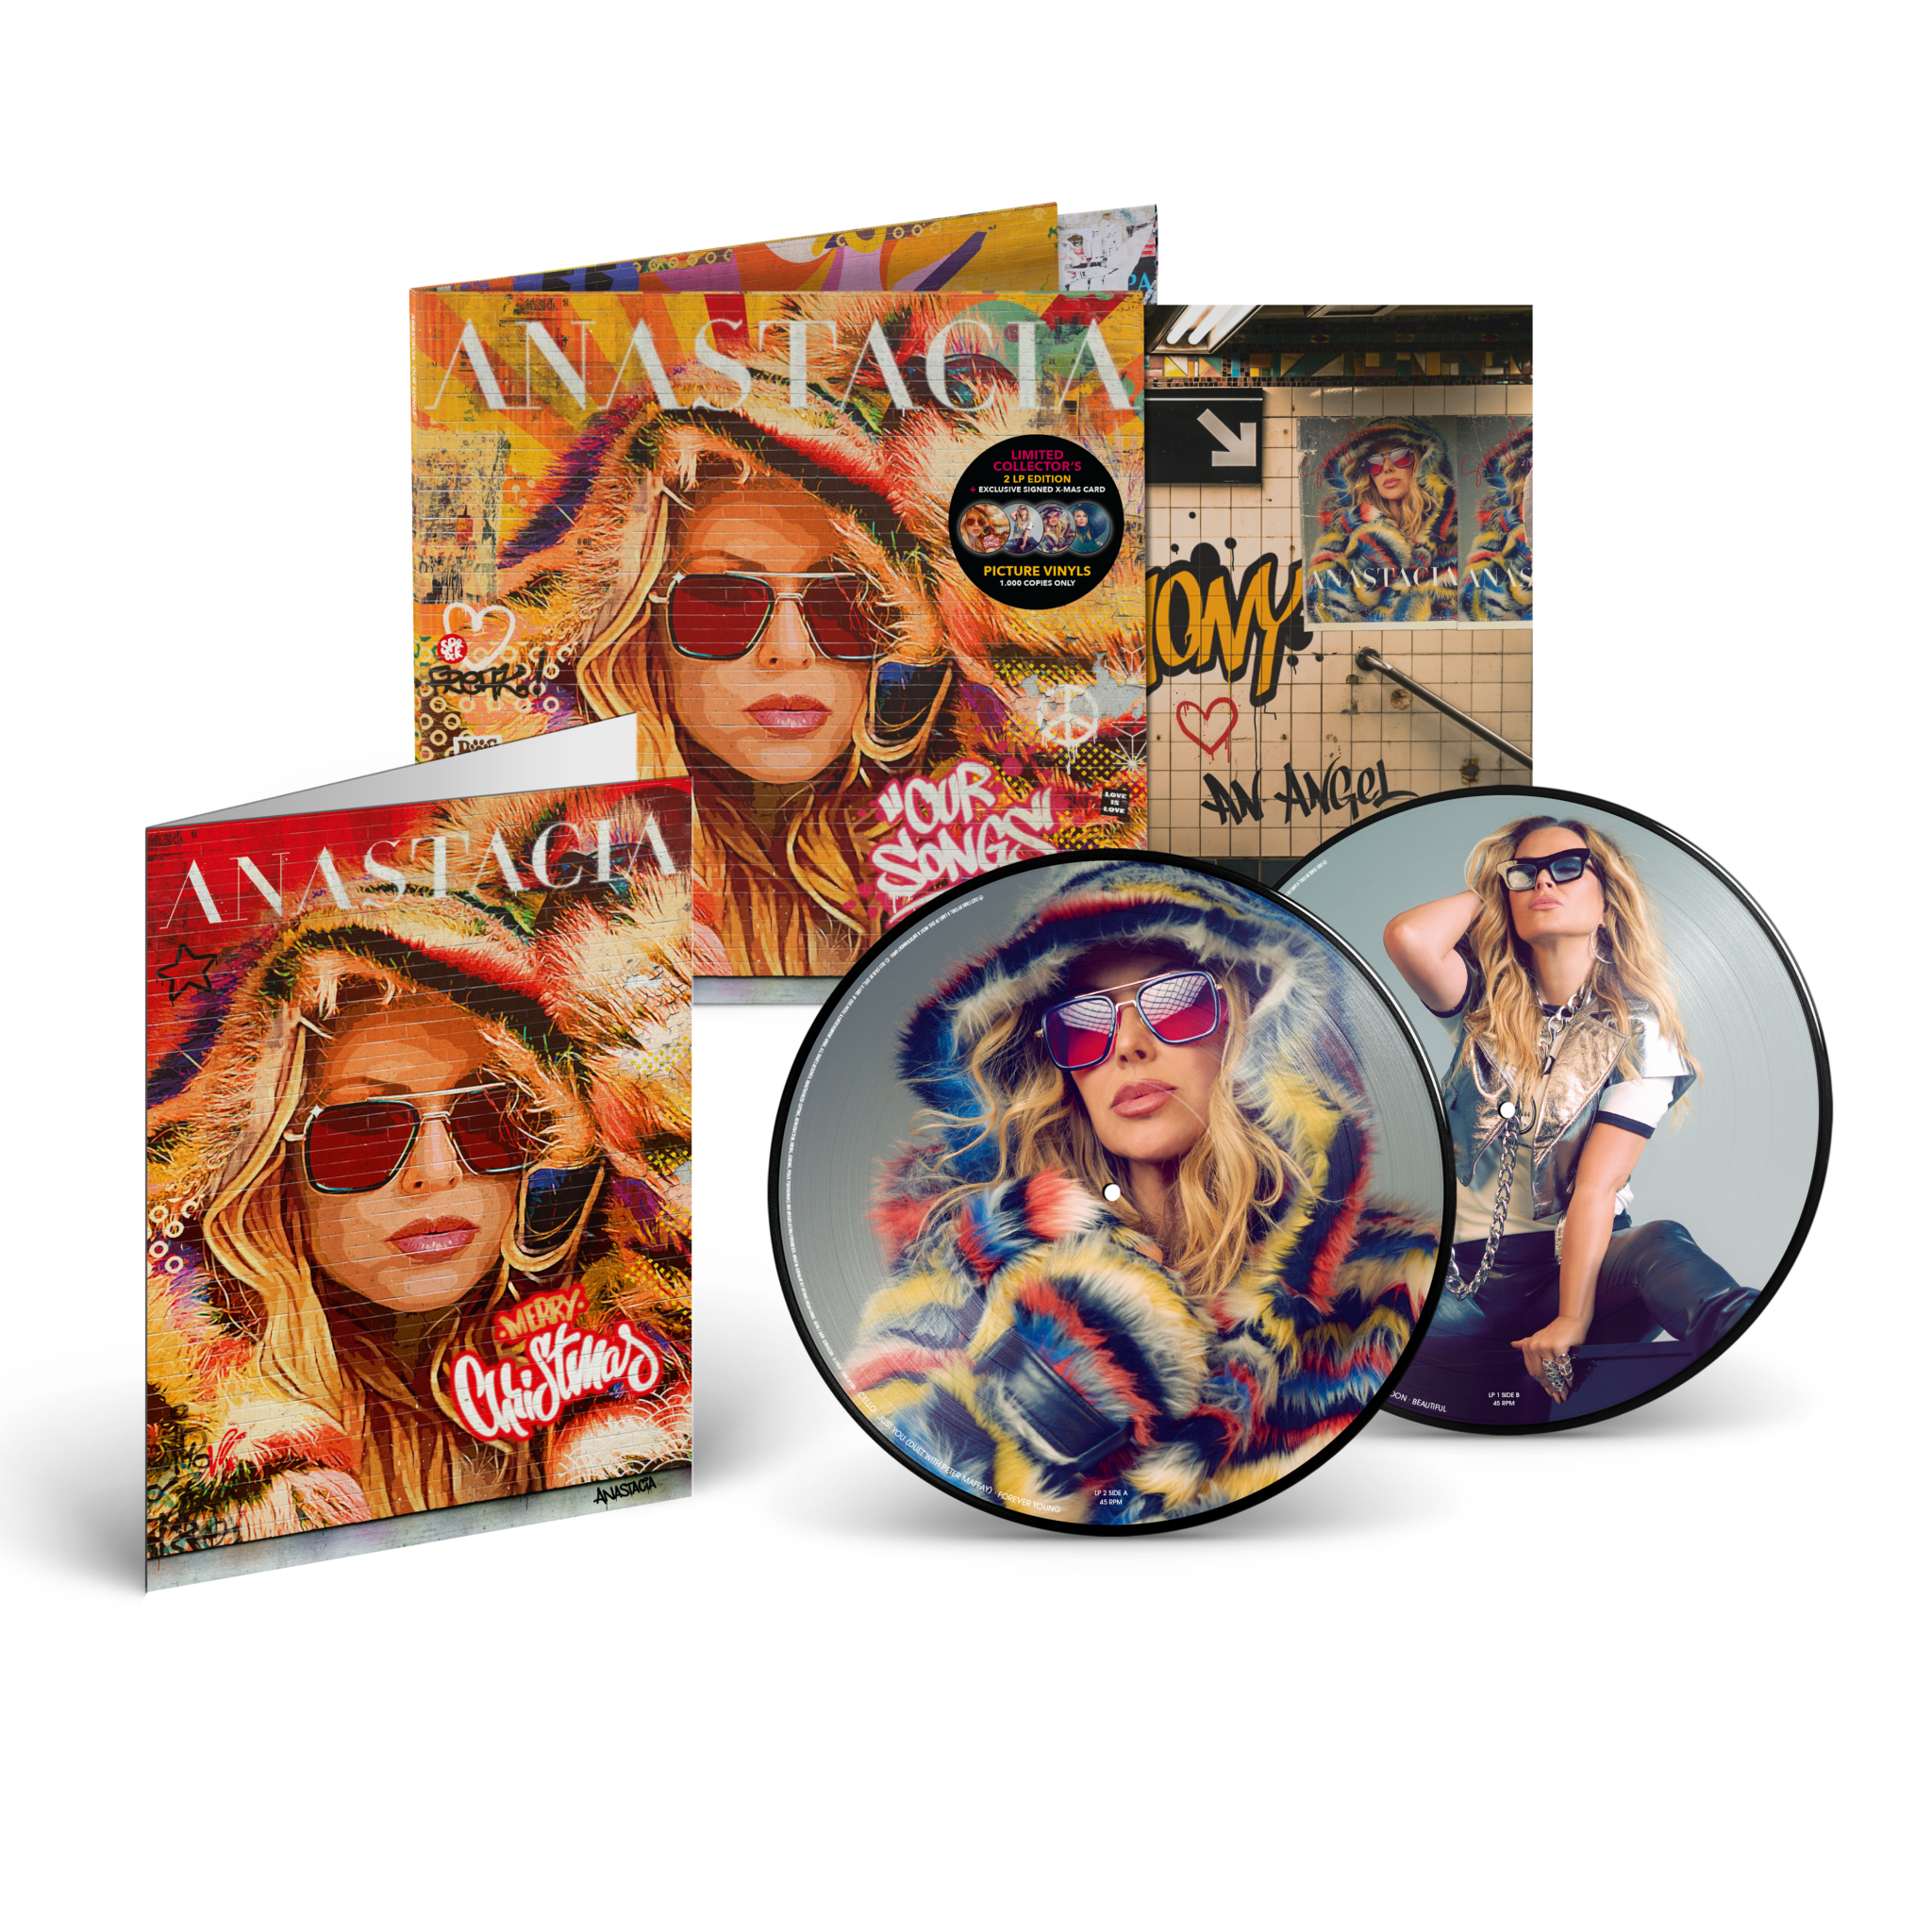 Eine Abbildung der 2LP Picture Vinyl Box zum Album "Our Songs" mit Bildern der Sängerin Anastacia